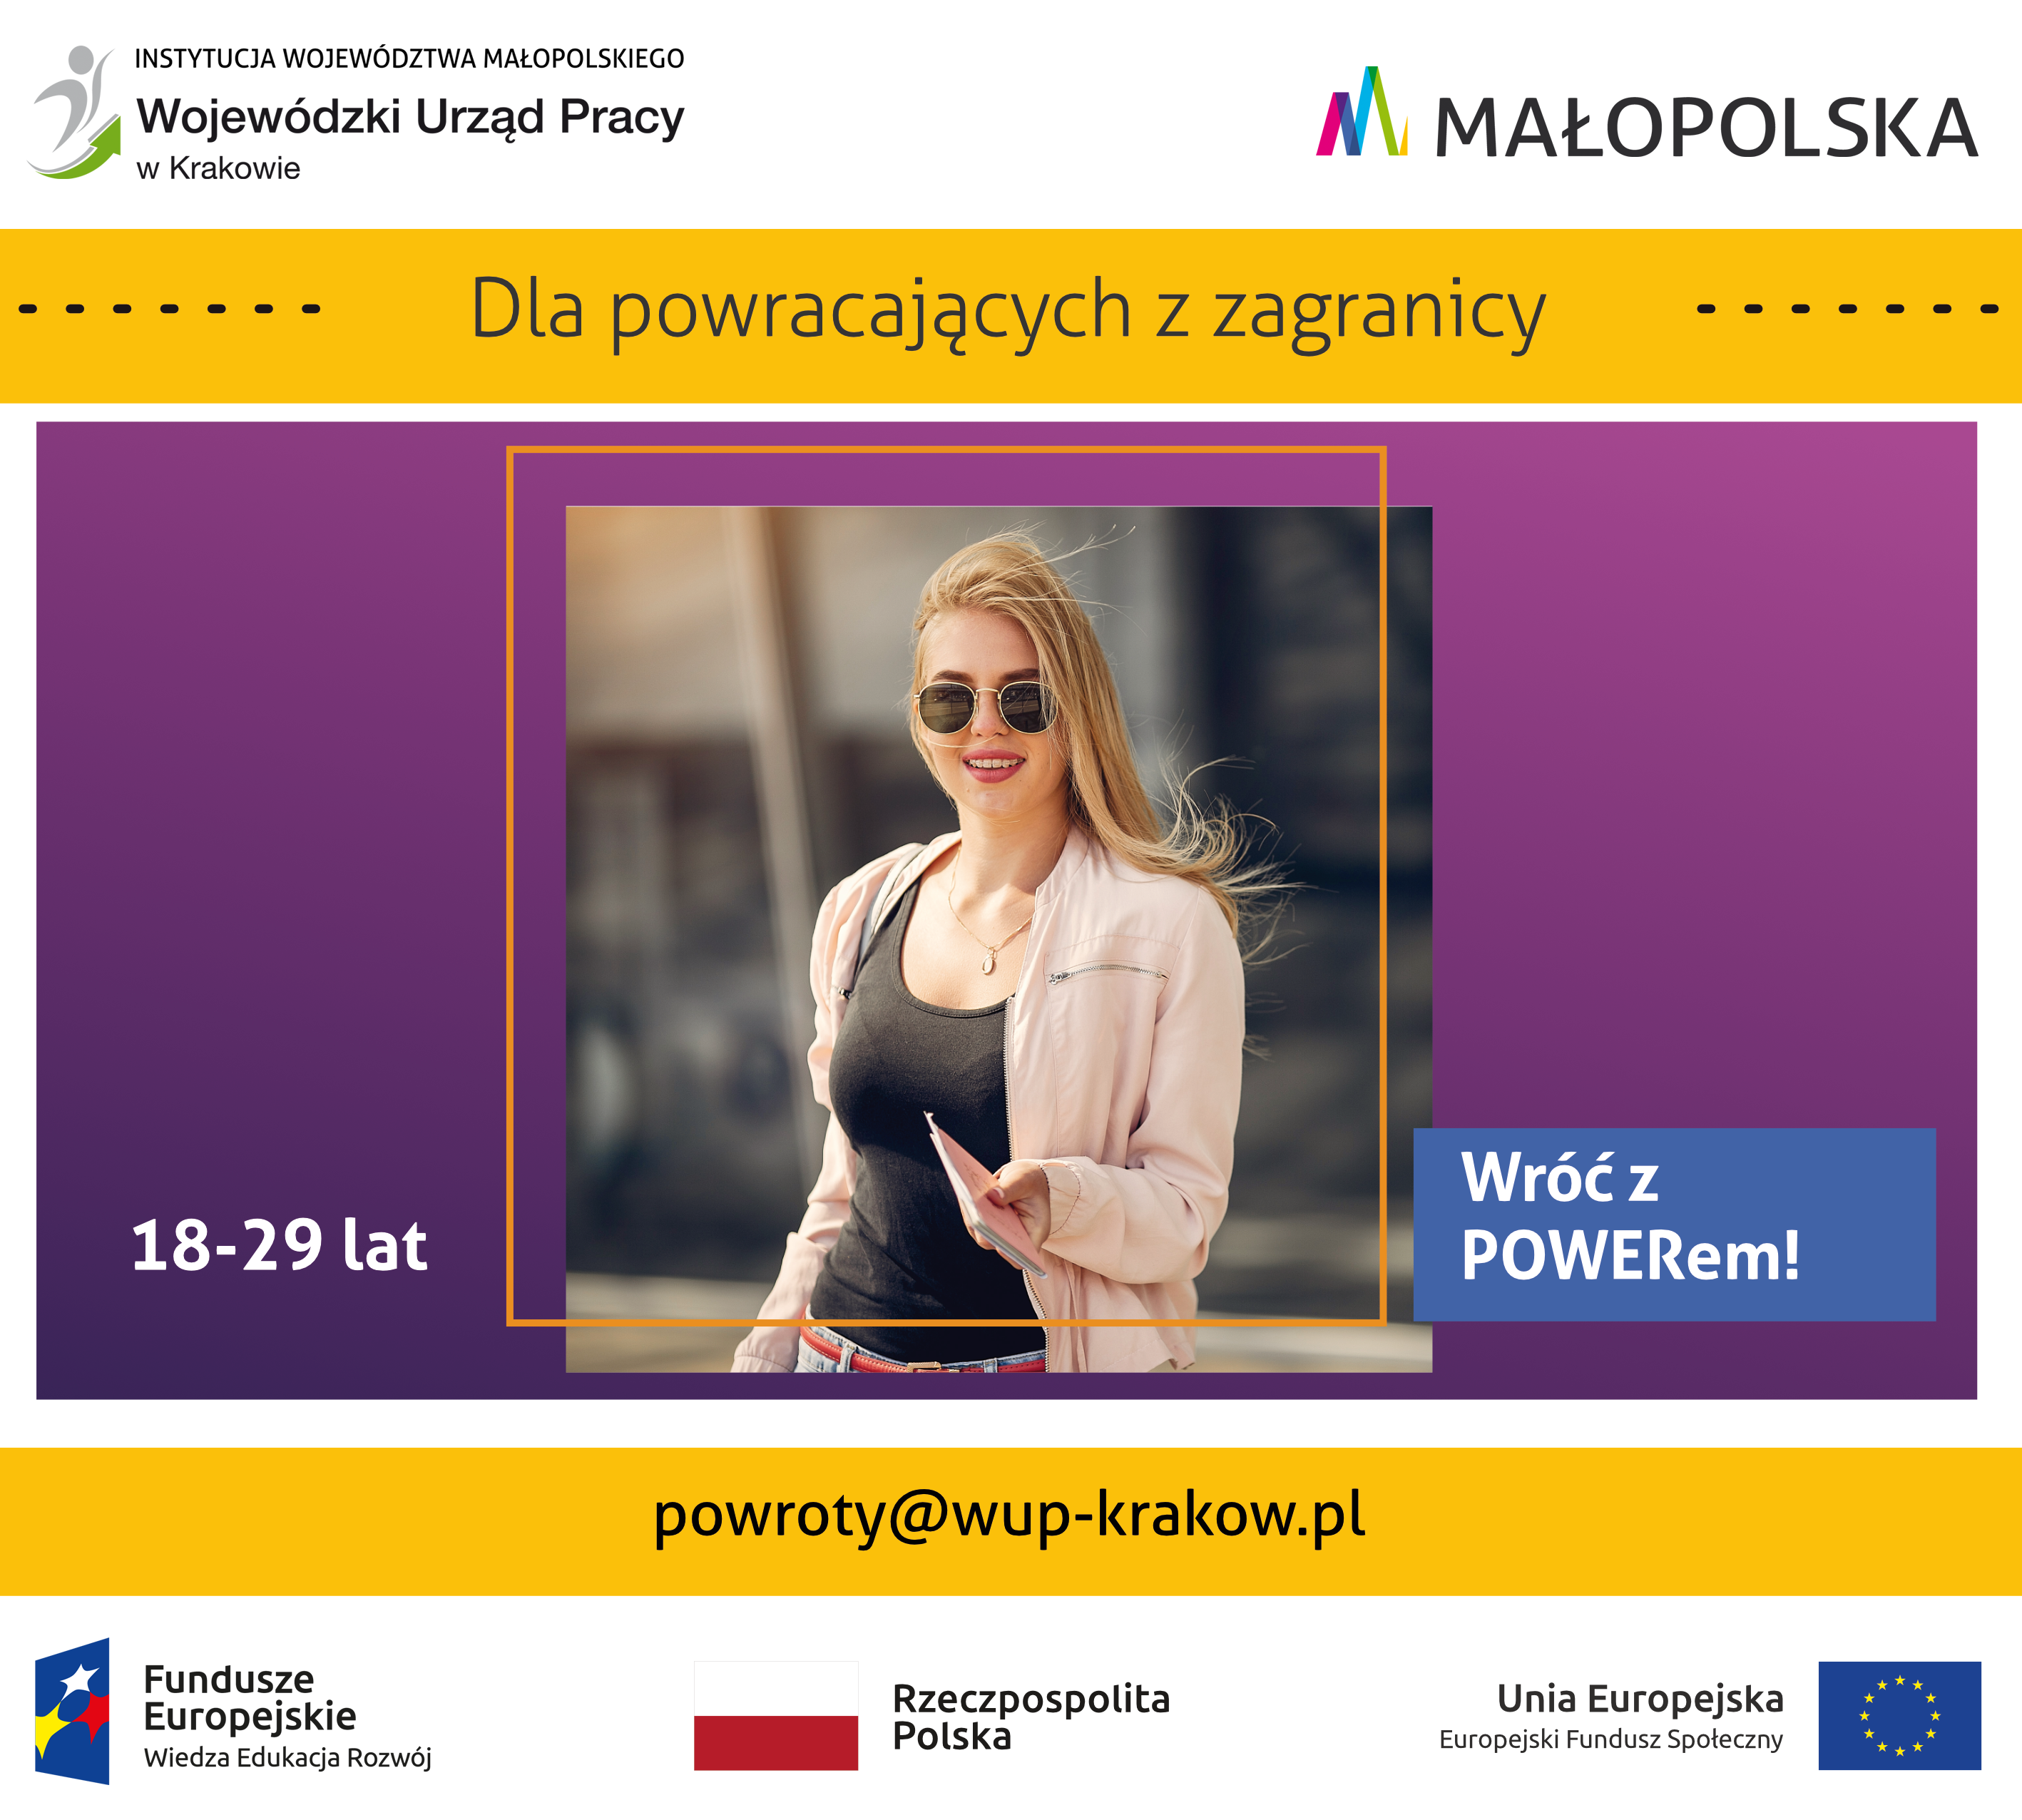 Młoda, uśmiechnięta dziewczyna w okularach słonecznych. Napisy: Dla powracających z zagranicy, 18-29 lat, Wróć z POWERem!, adres mailowy powroty@wup-krakow.pl